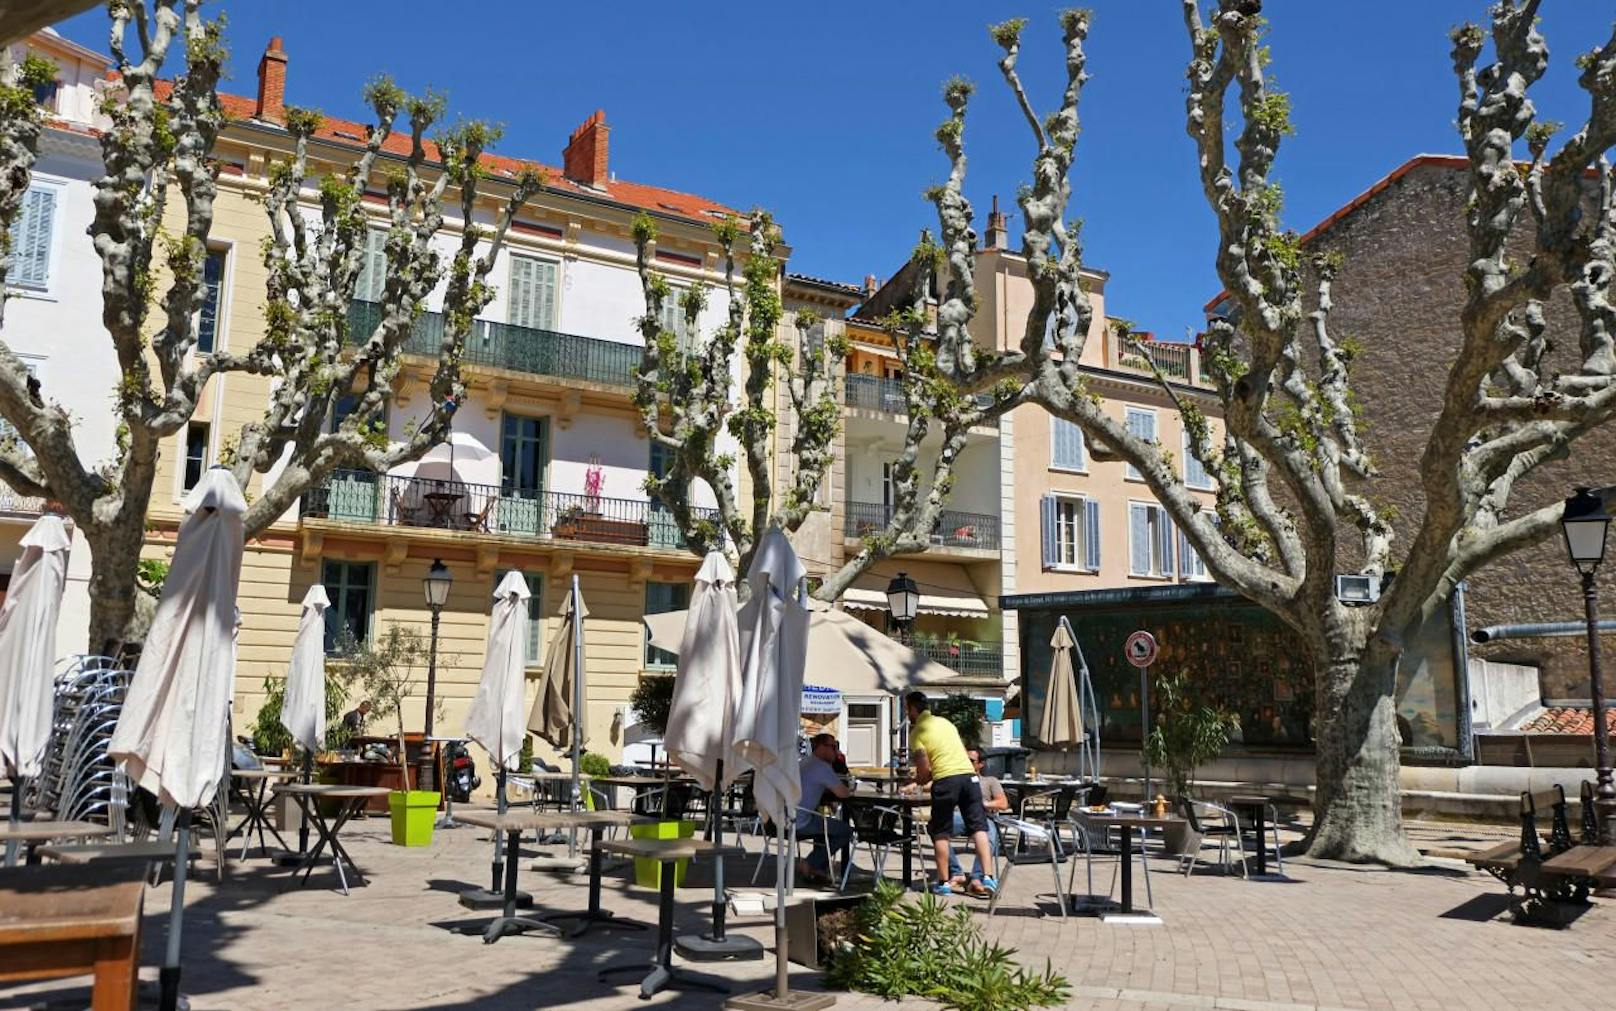 Der Place Bellevue in der französischen Stadt Le Cannet nahe Cannes.